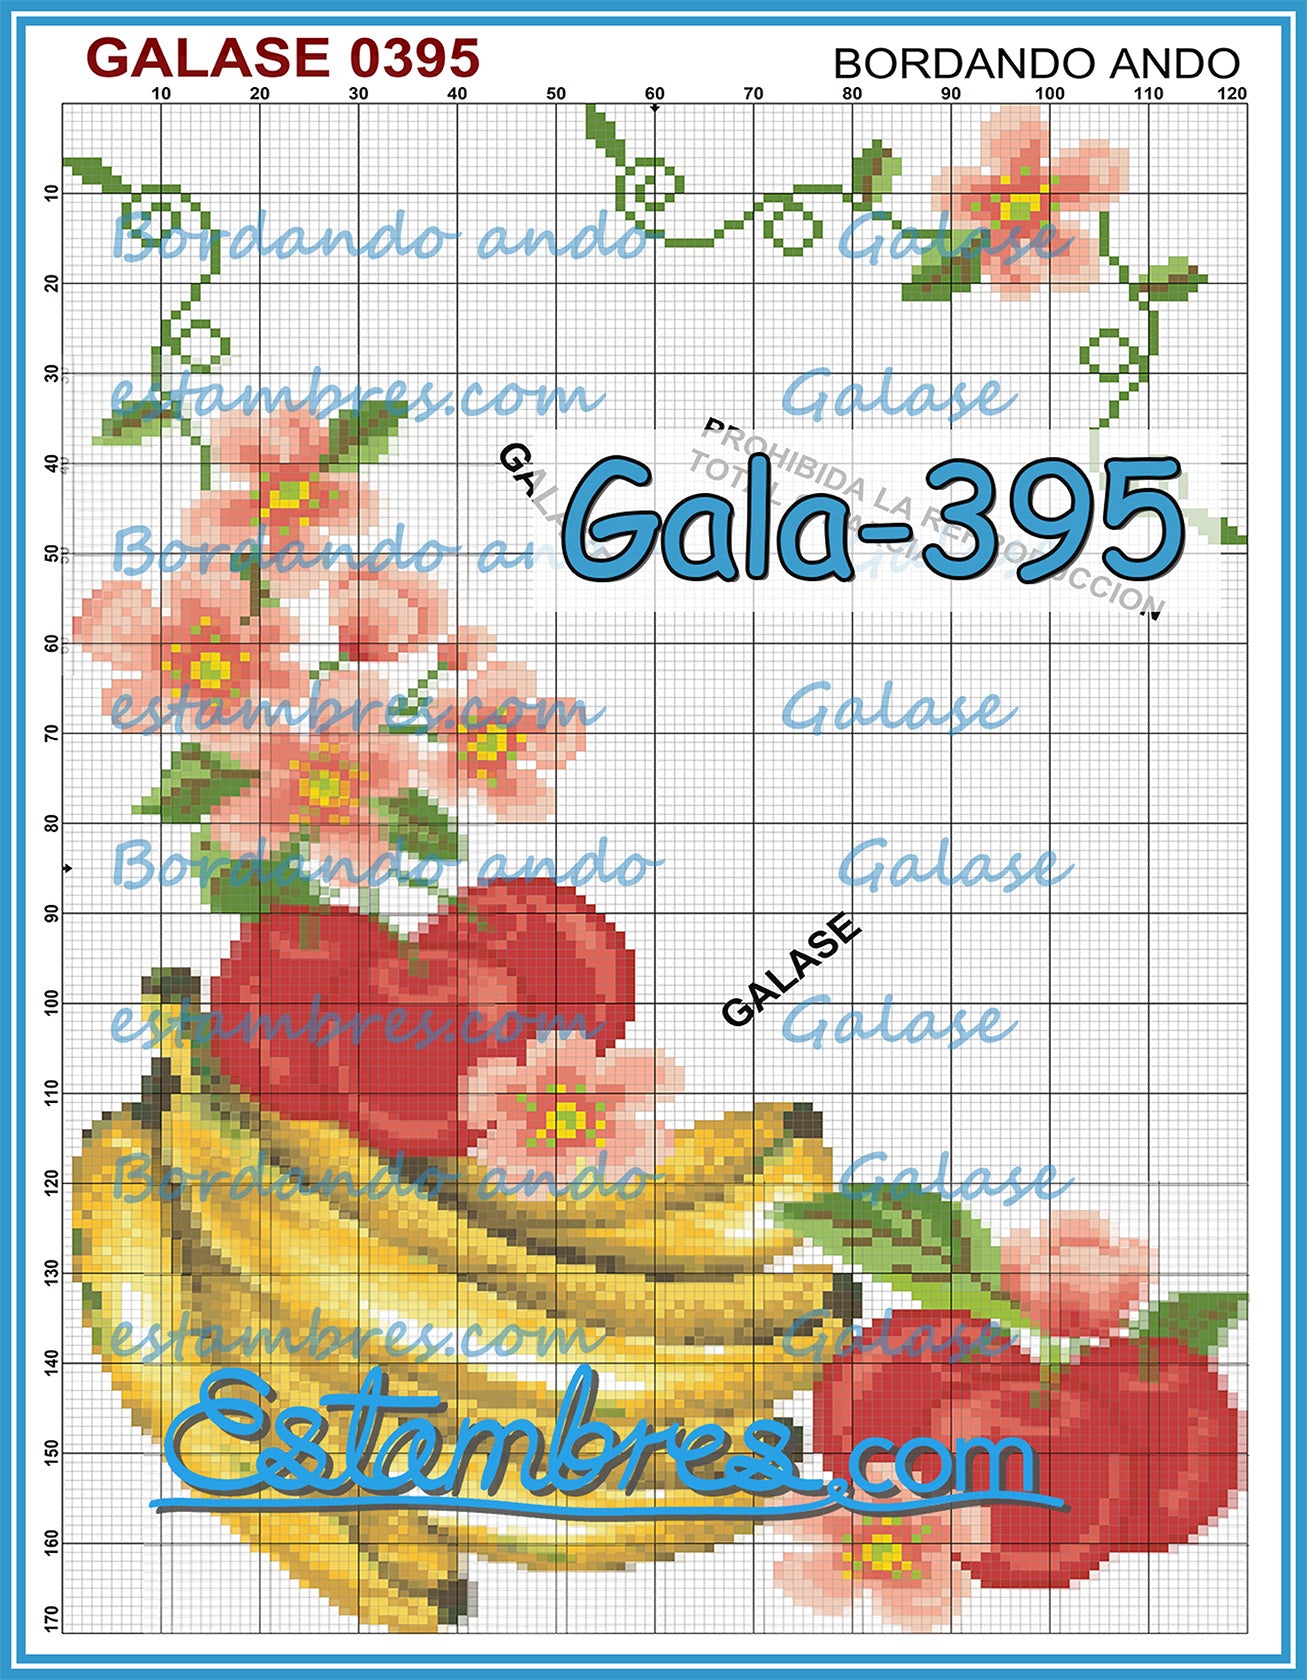 GALASE [351-420] - 6 of 7